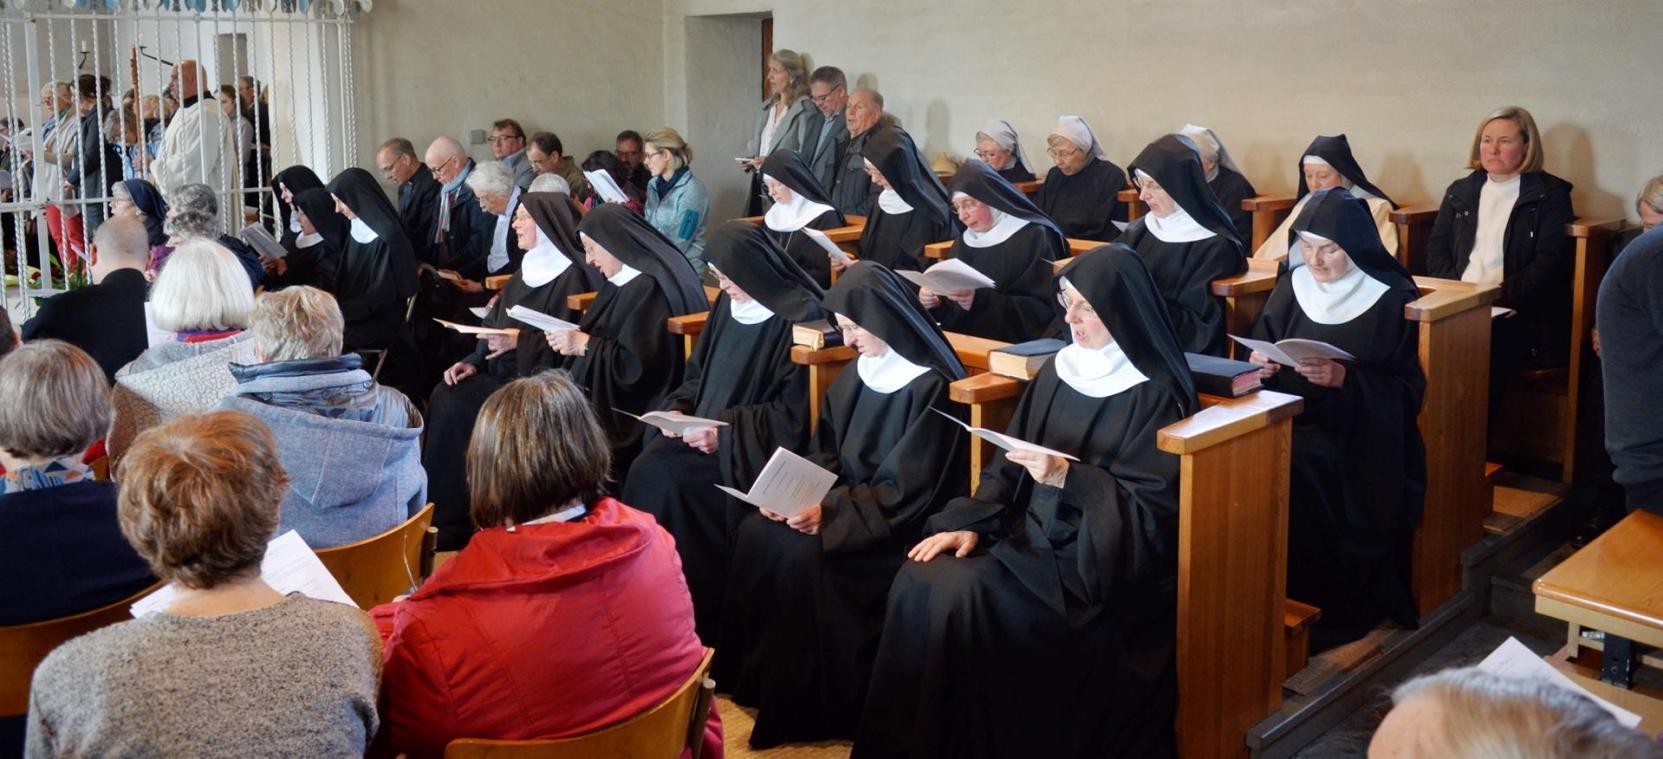 <p>Einen besonderen Moment erlebten die Gäste im Abschiedsgottesdienst, als die scheidenden Schwestern in der Steinfelder Kapelle ihre Choralgesänge anstimmten.</p>